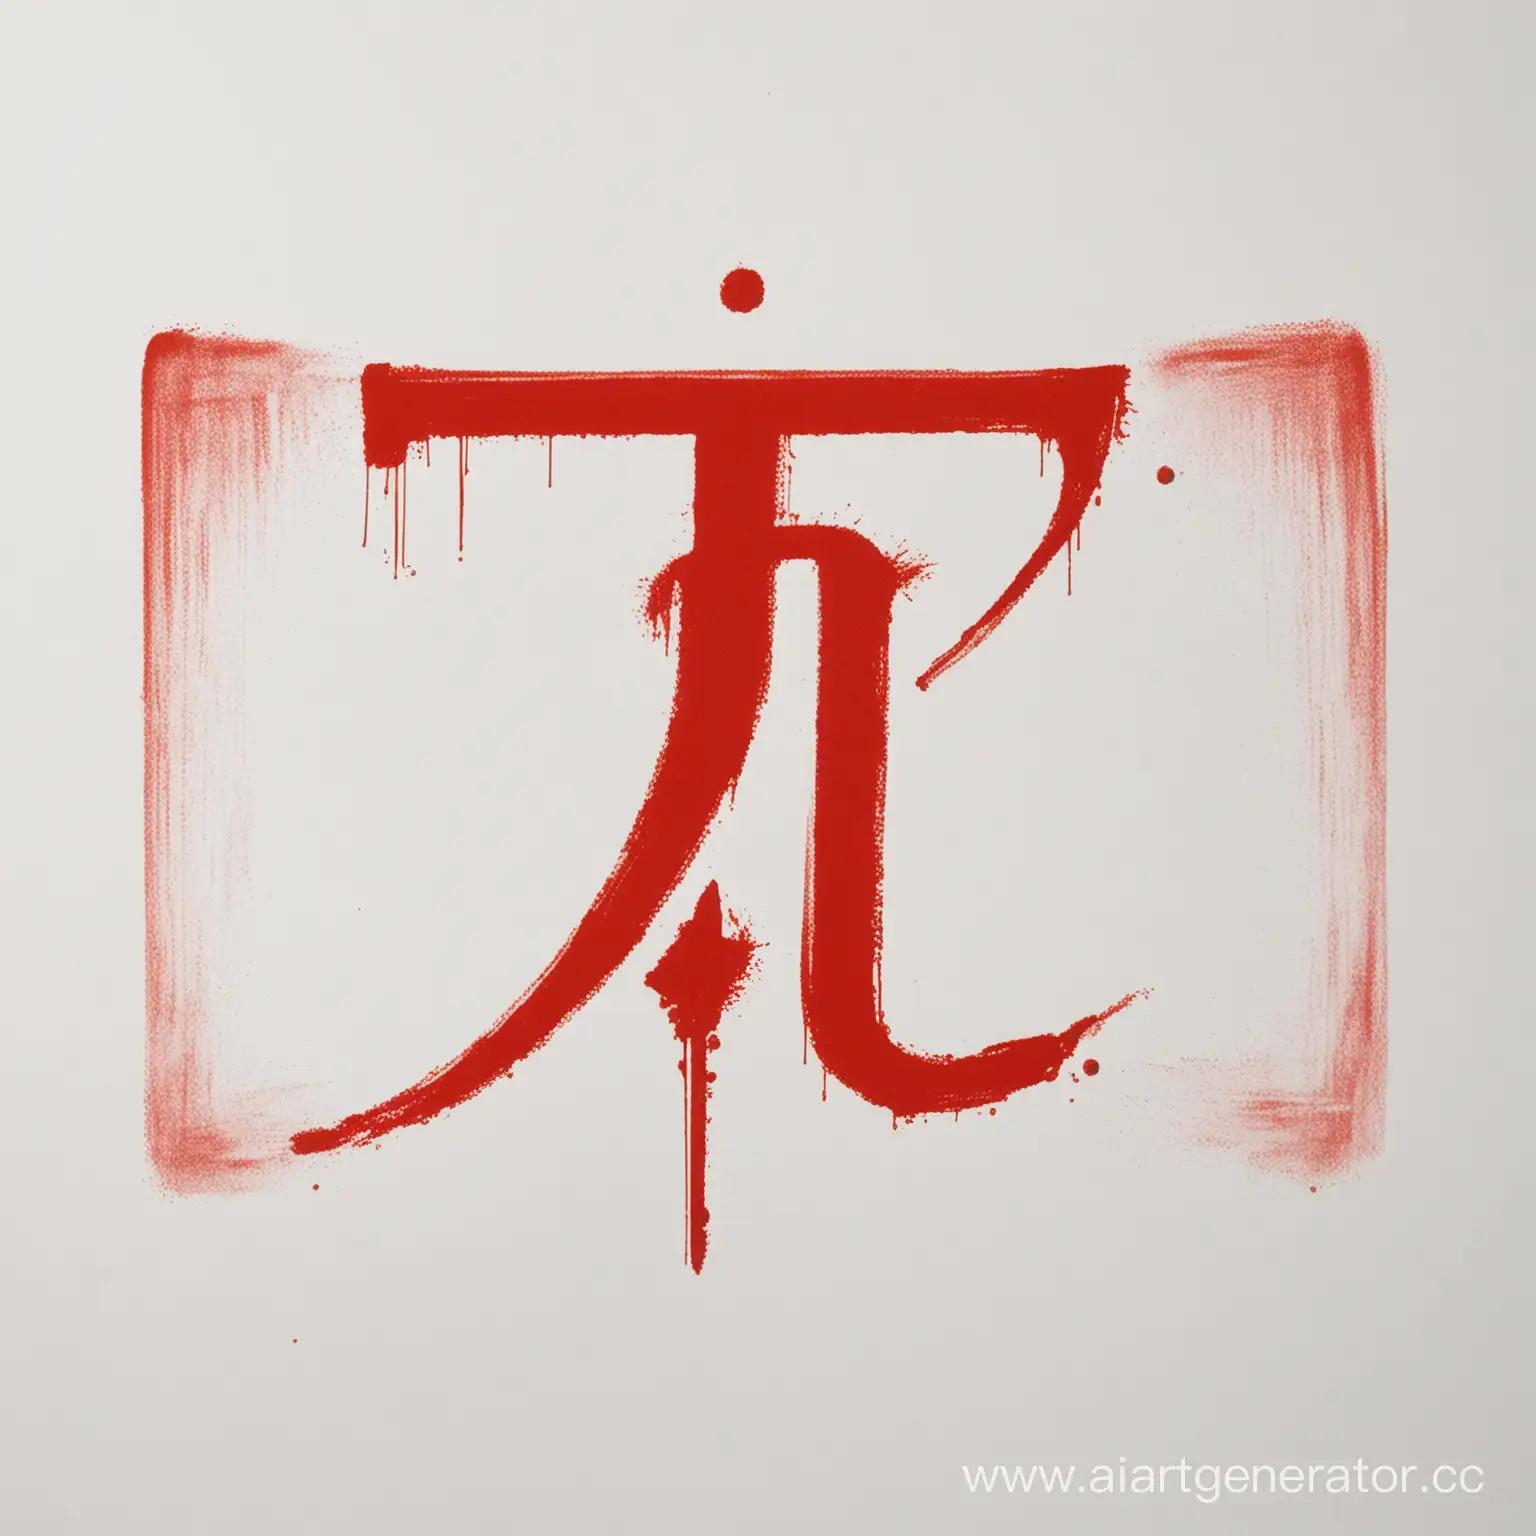 Символ レネゲード написанный красным краской на белом фоне.